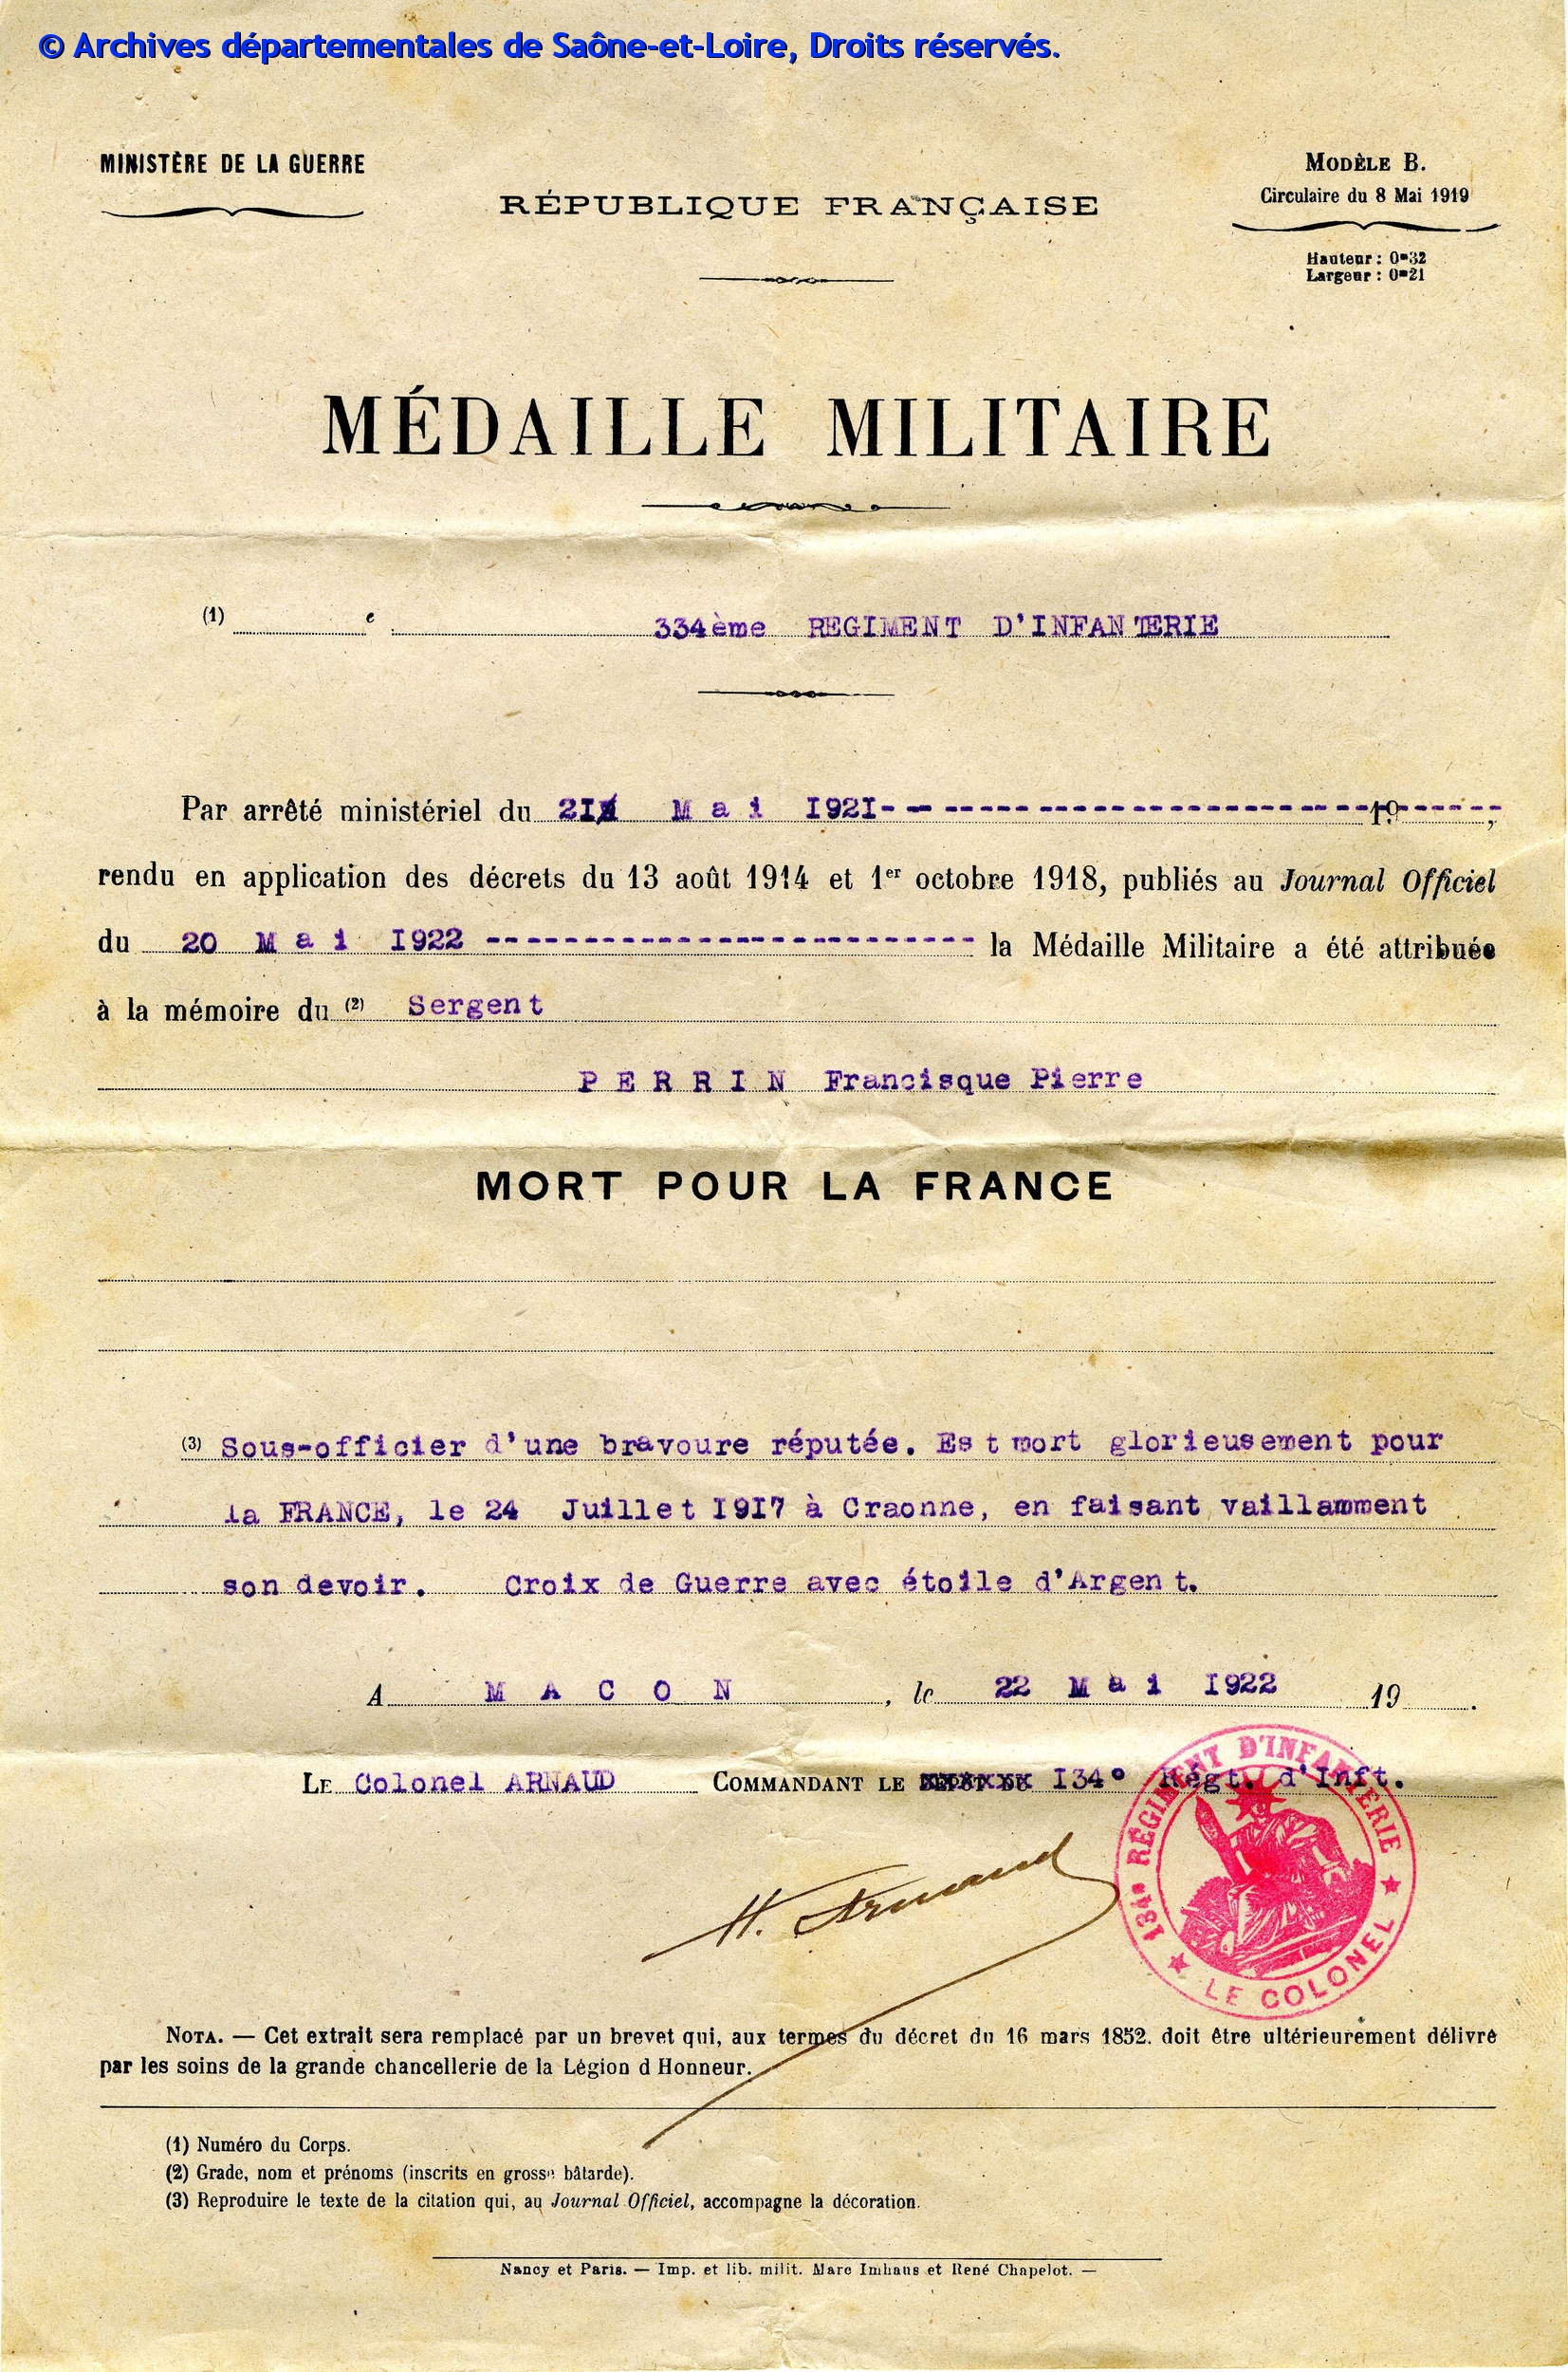 Certificat d'attribution de la médaille militaire